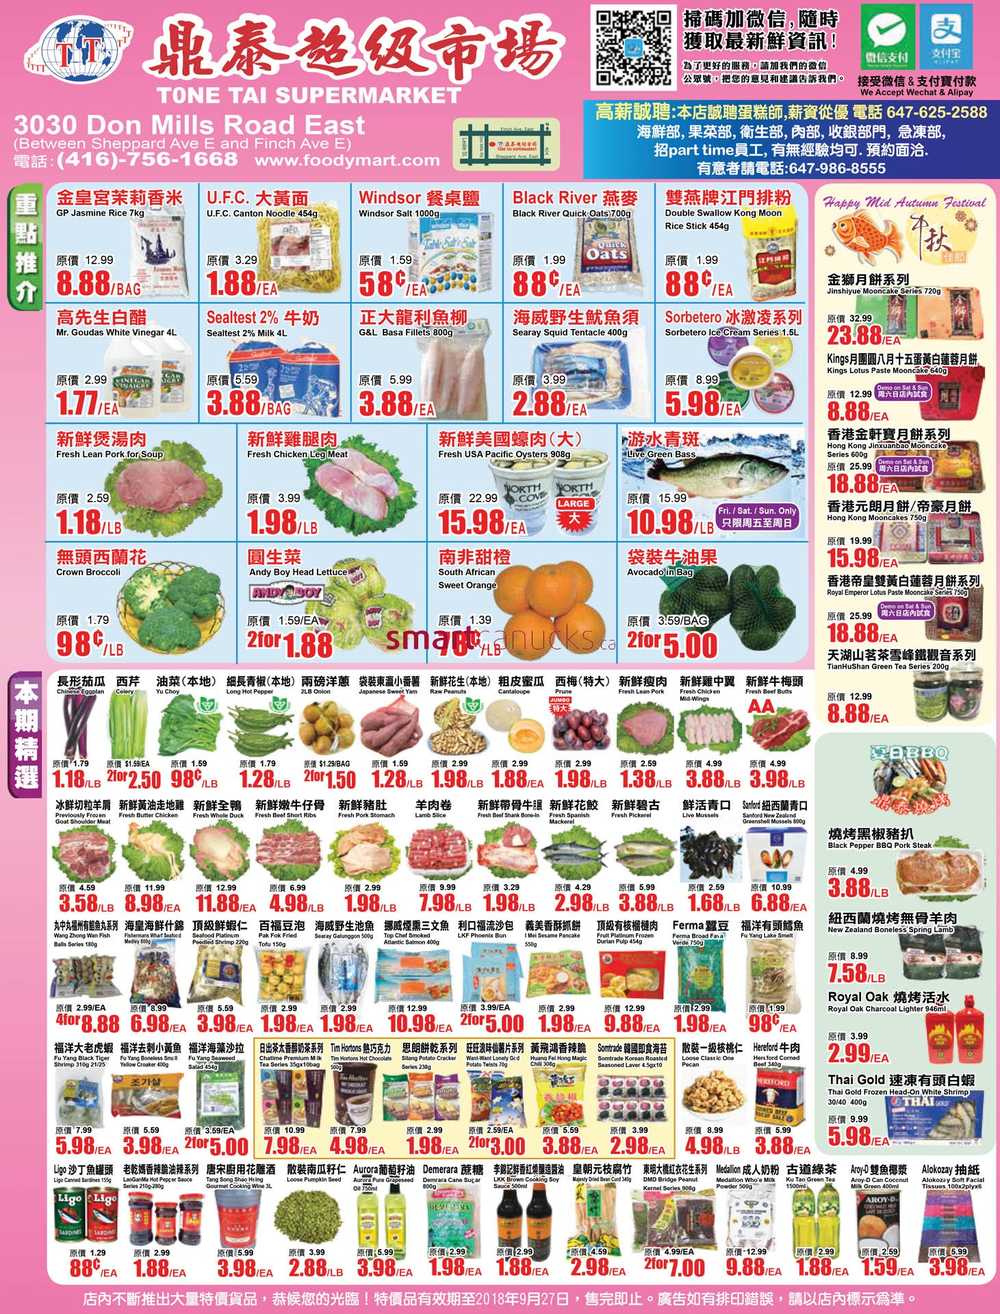 Tone Tai Supermarket Flyer September 21 to 27